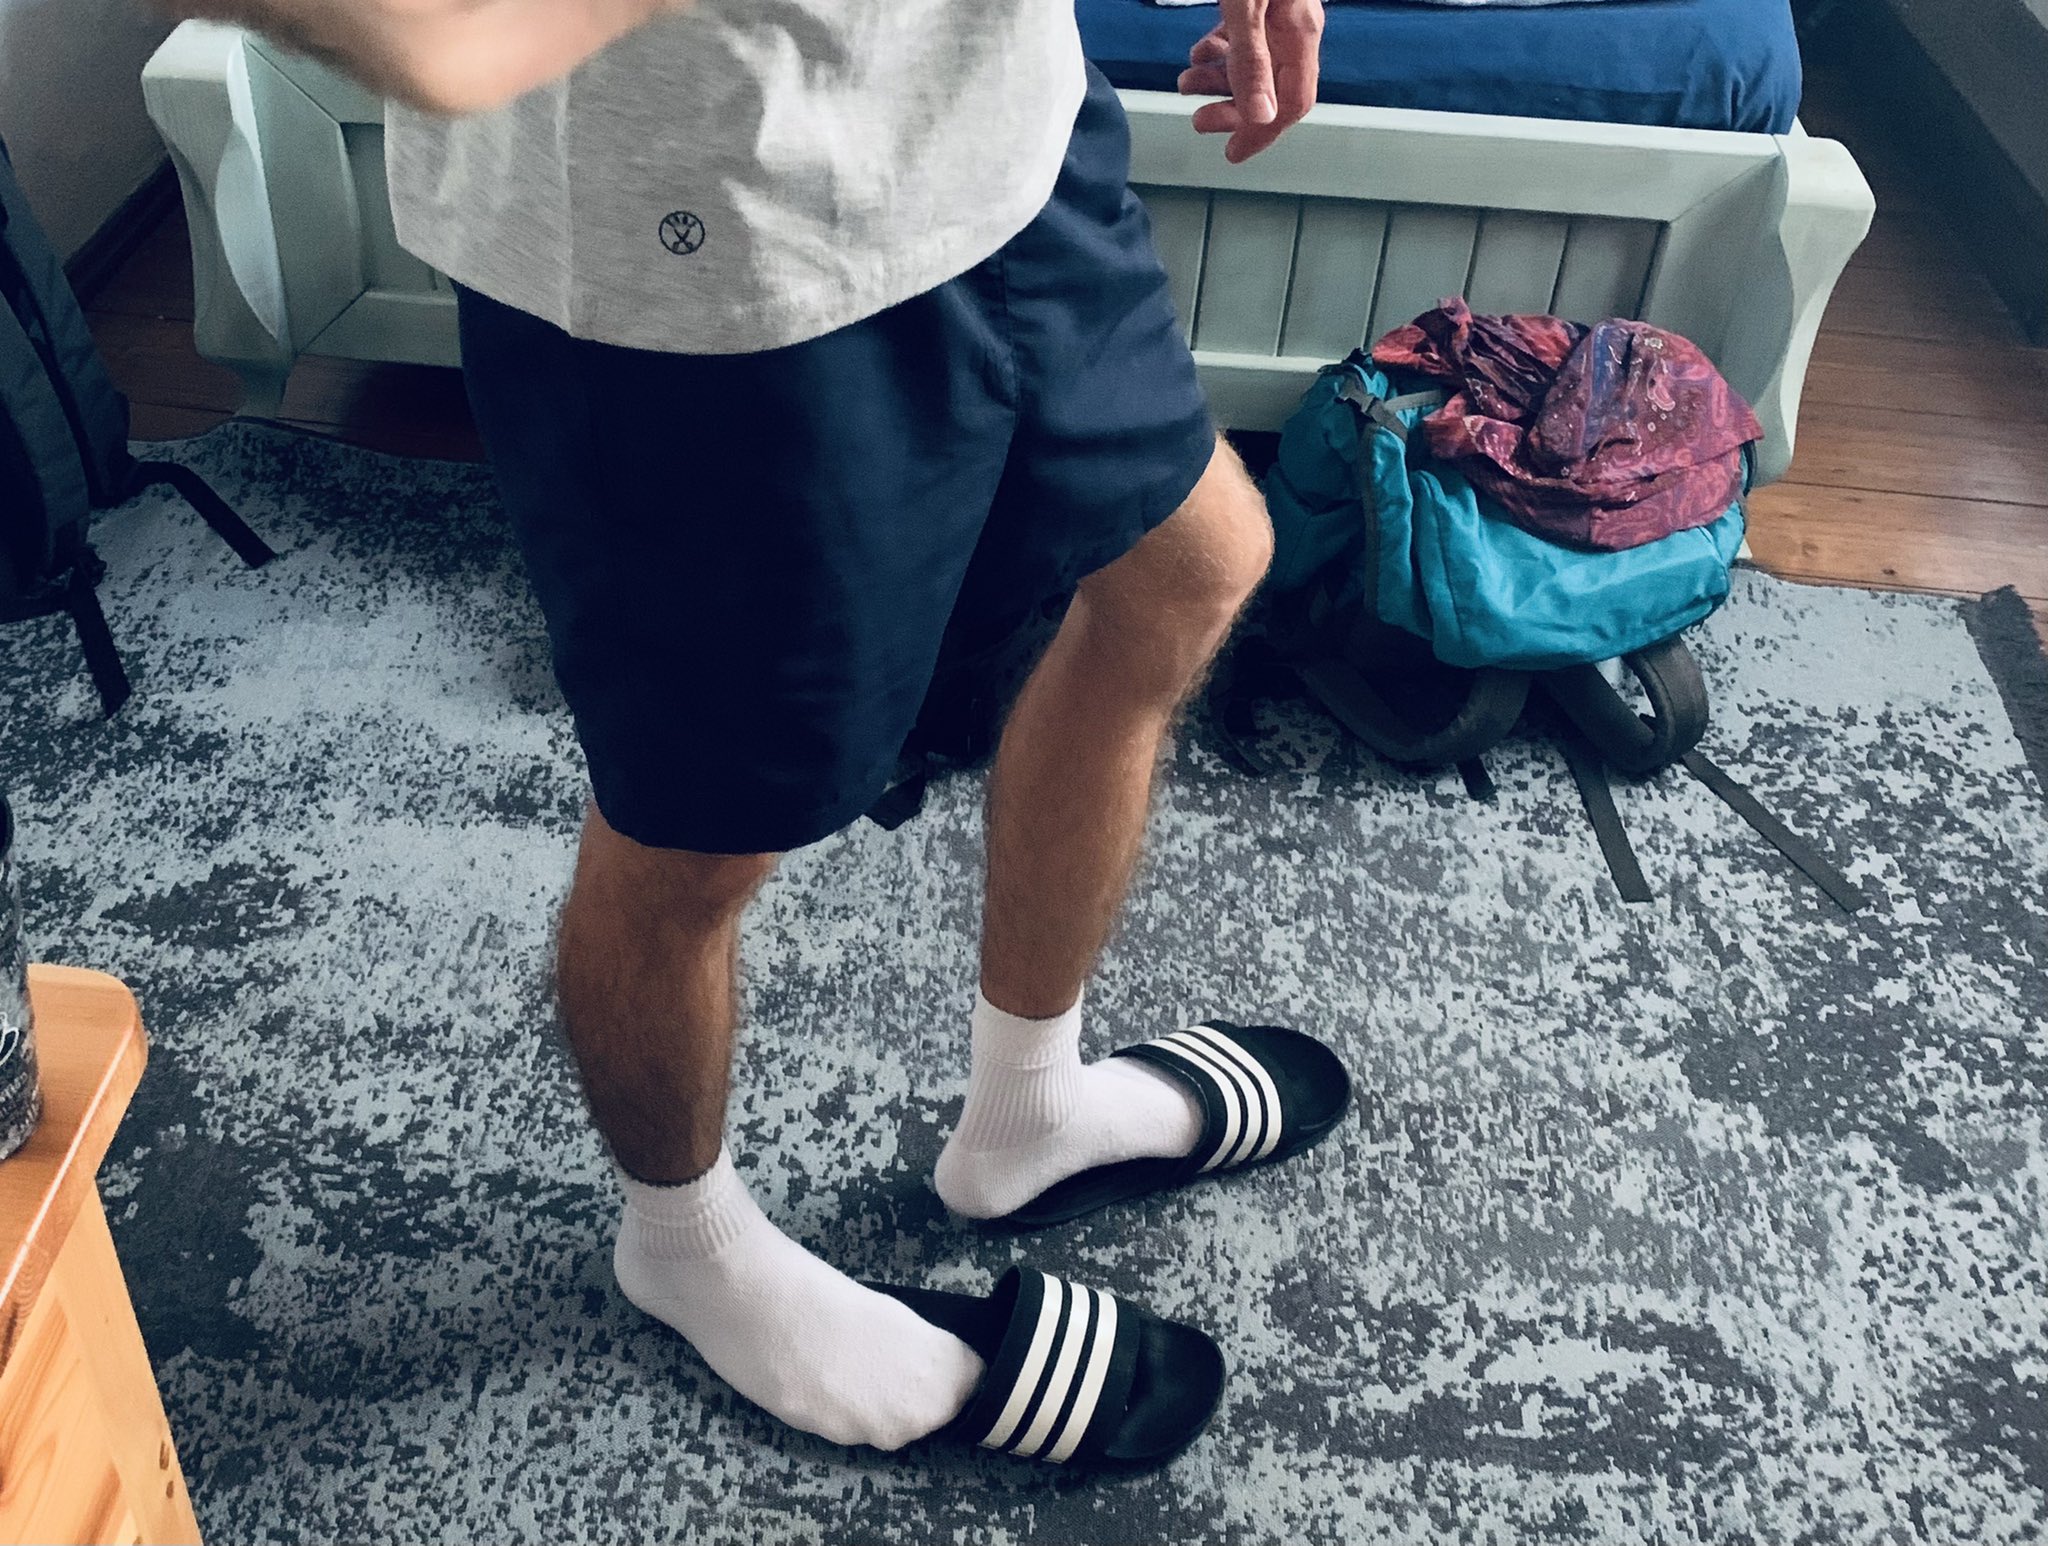 The World in White Socks on Twitter: "Which do you prefer? #flipflops #socks  #slides #Adidas #whitesocks #thongs #slippers #jandals #sandals #crewsocks  #슬리퍼 #쪼리 #아다다스 #양말 https://t.co/vQD7I306L7" / Twitter